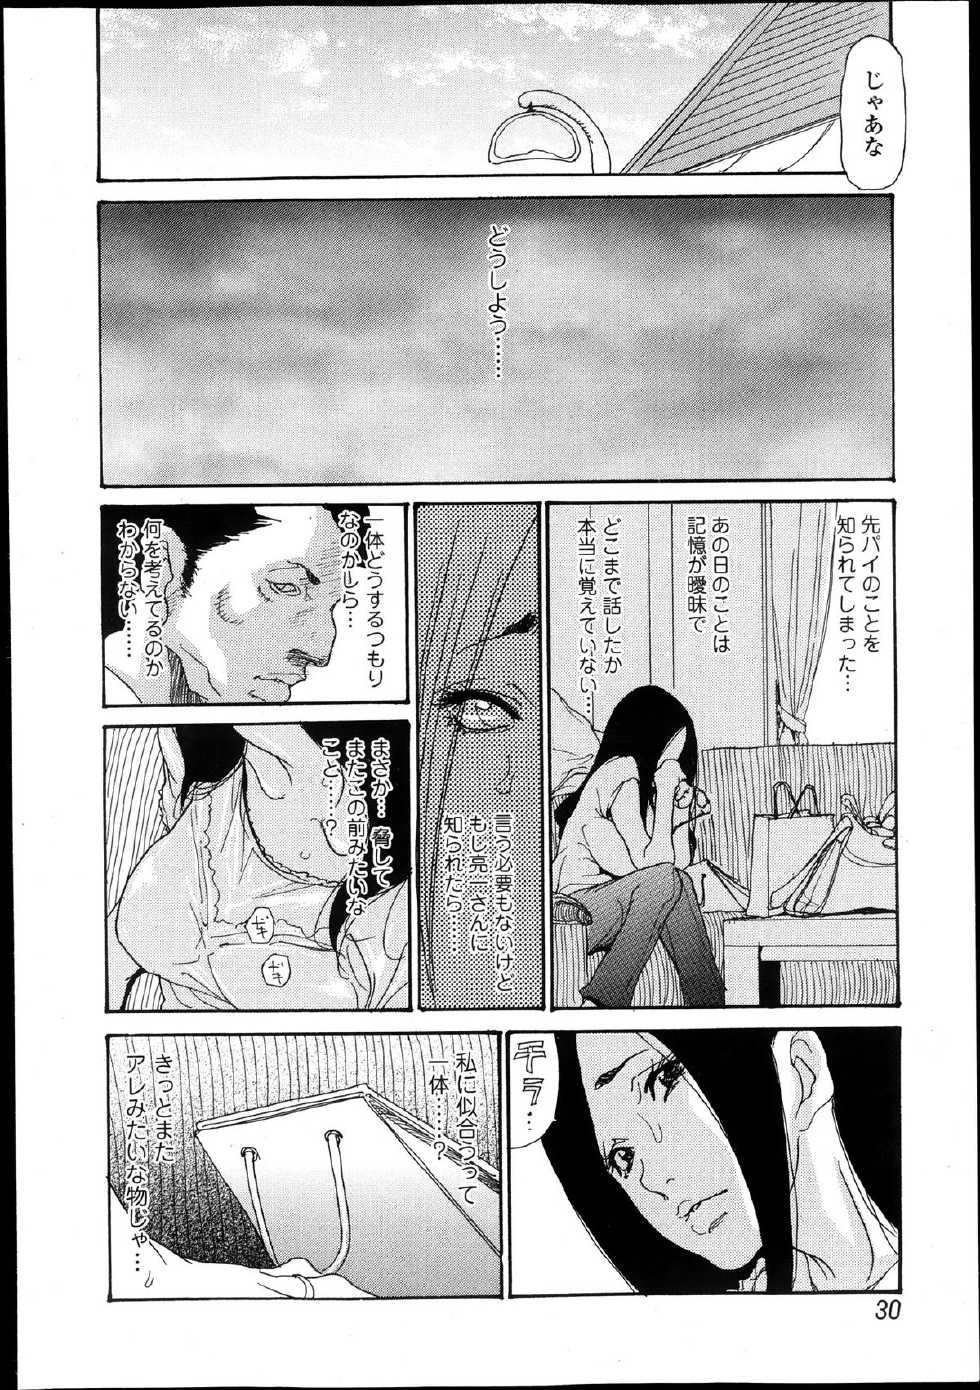 Bishoujo Kakumei KIWAME Road Vol.10 - Page 30